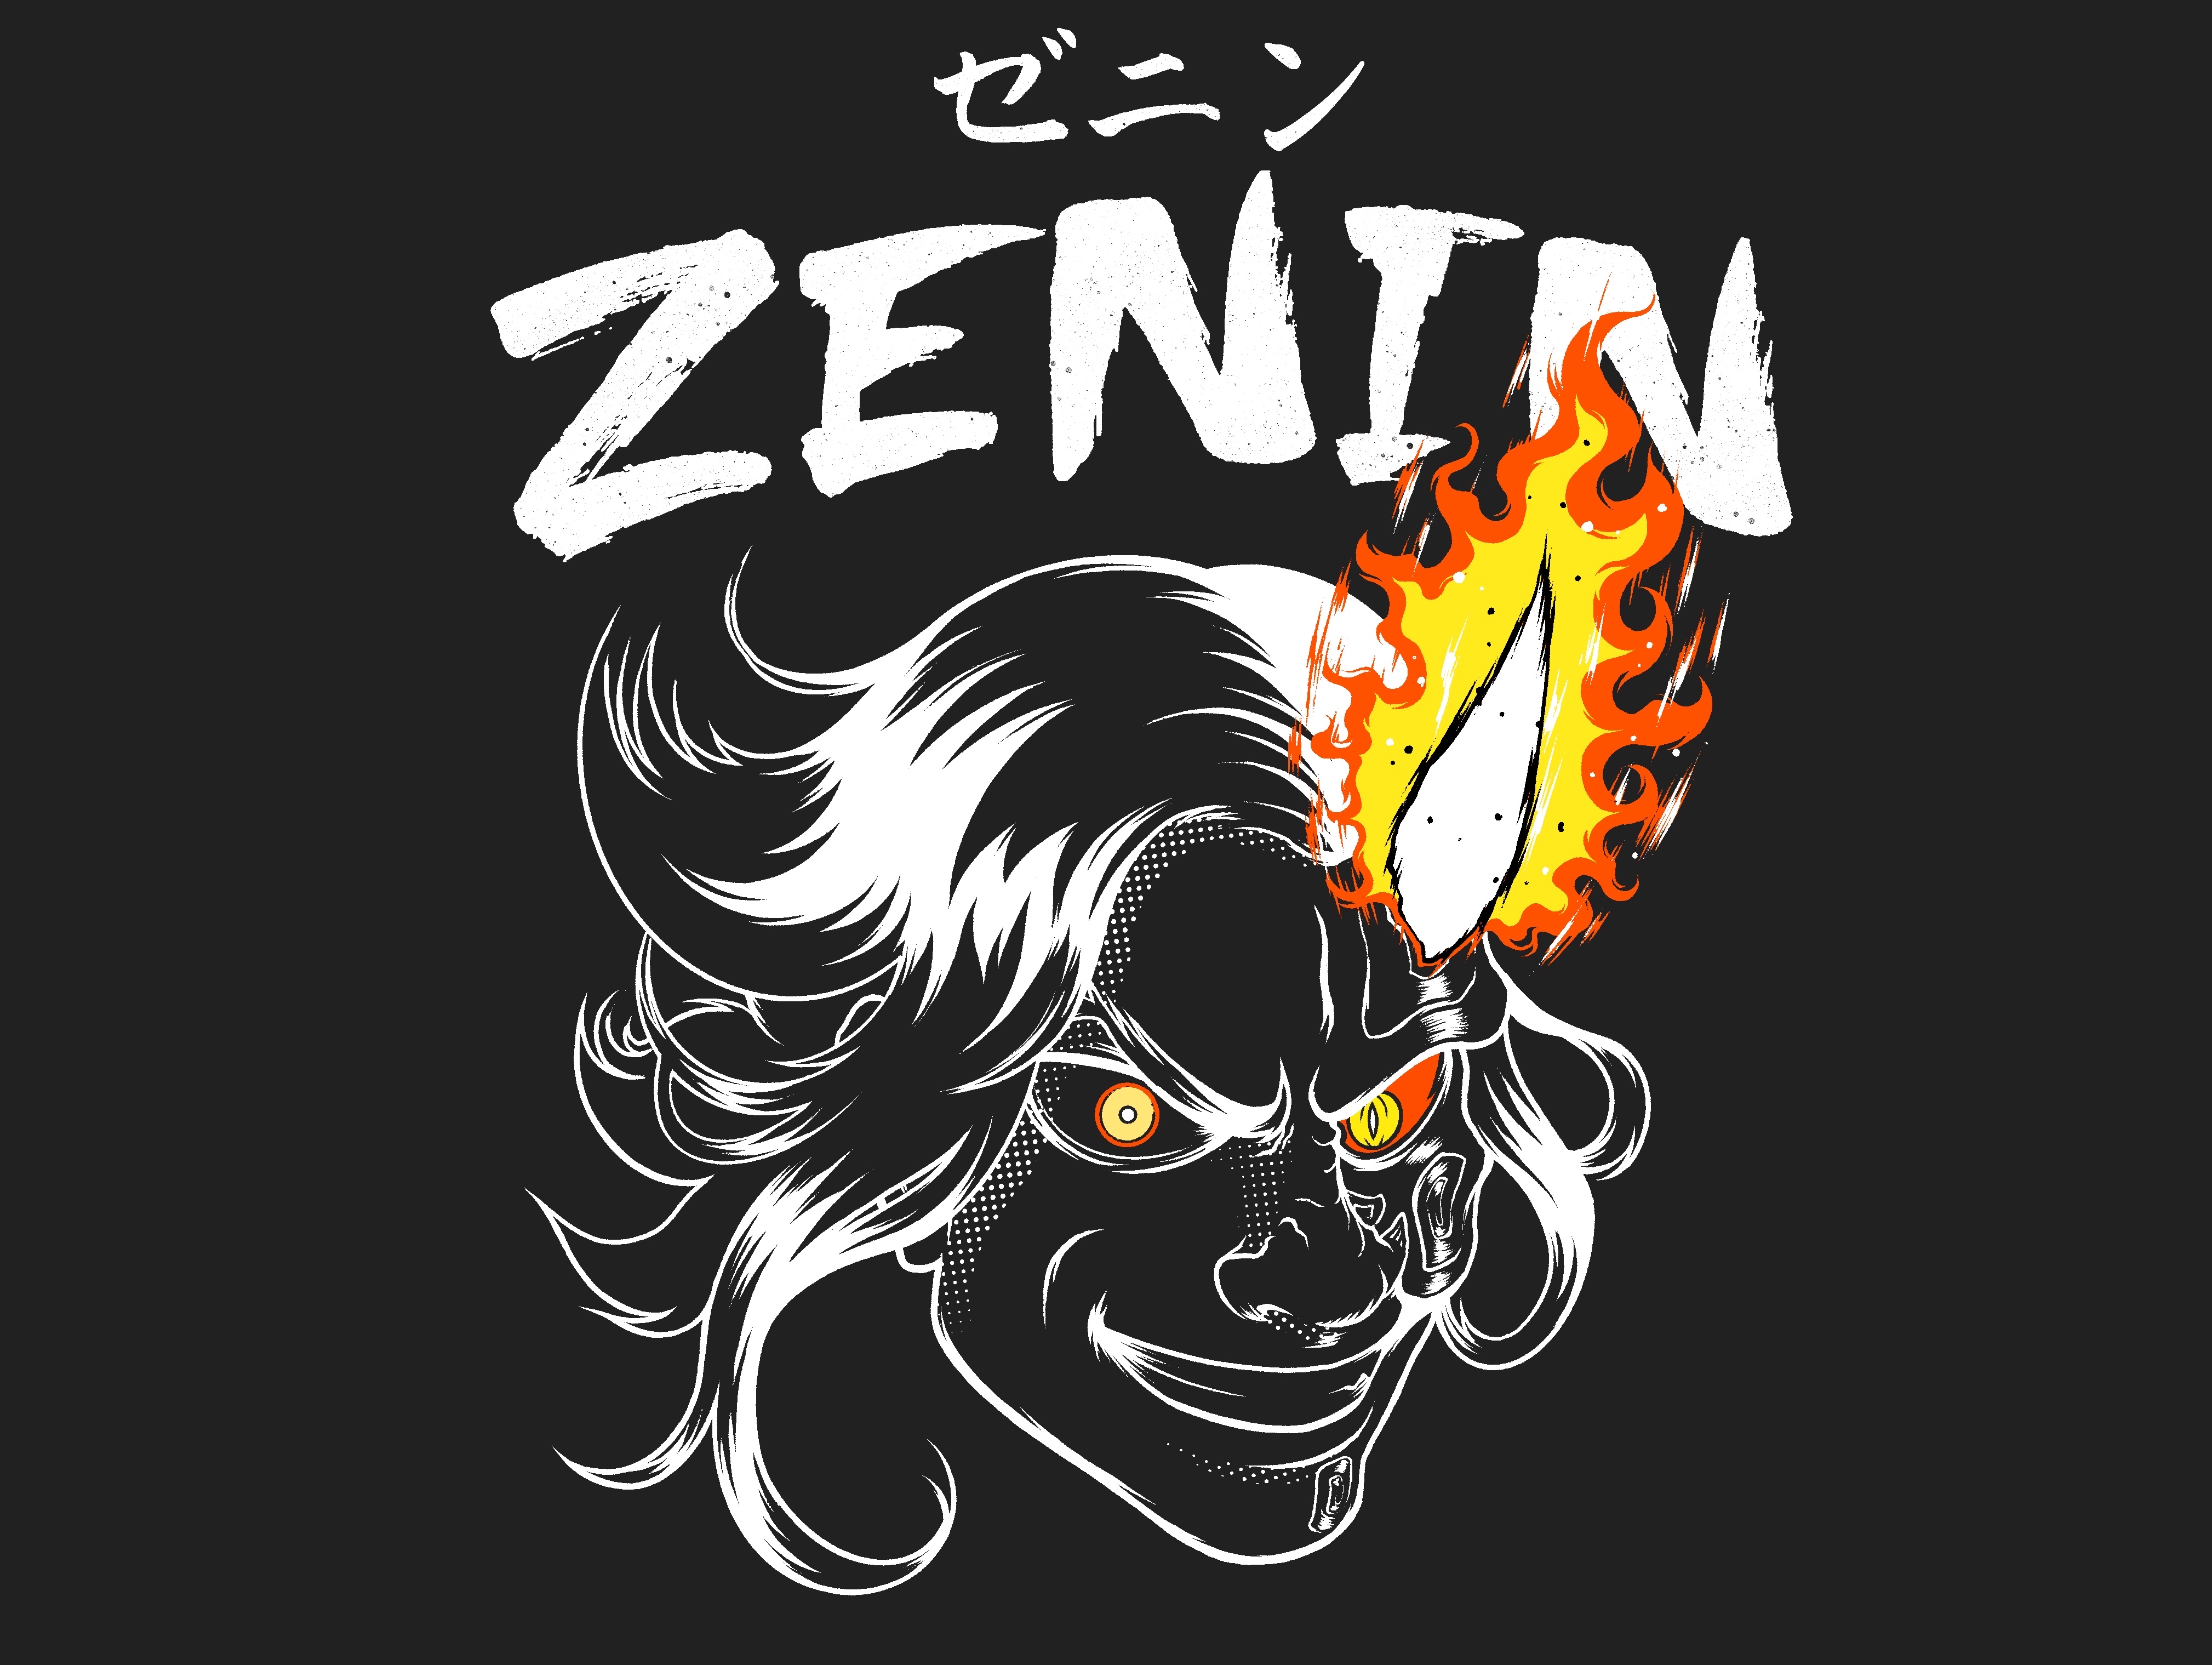 Zenin